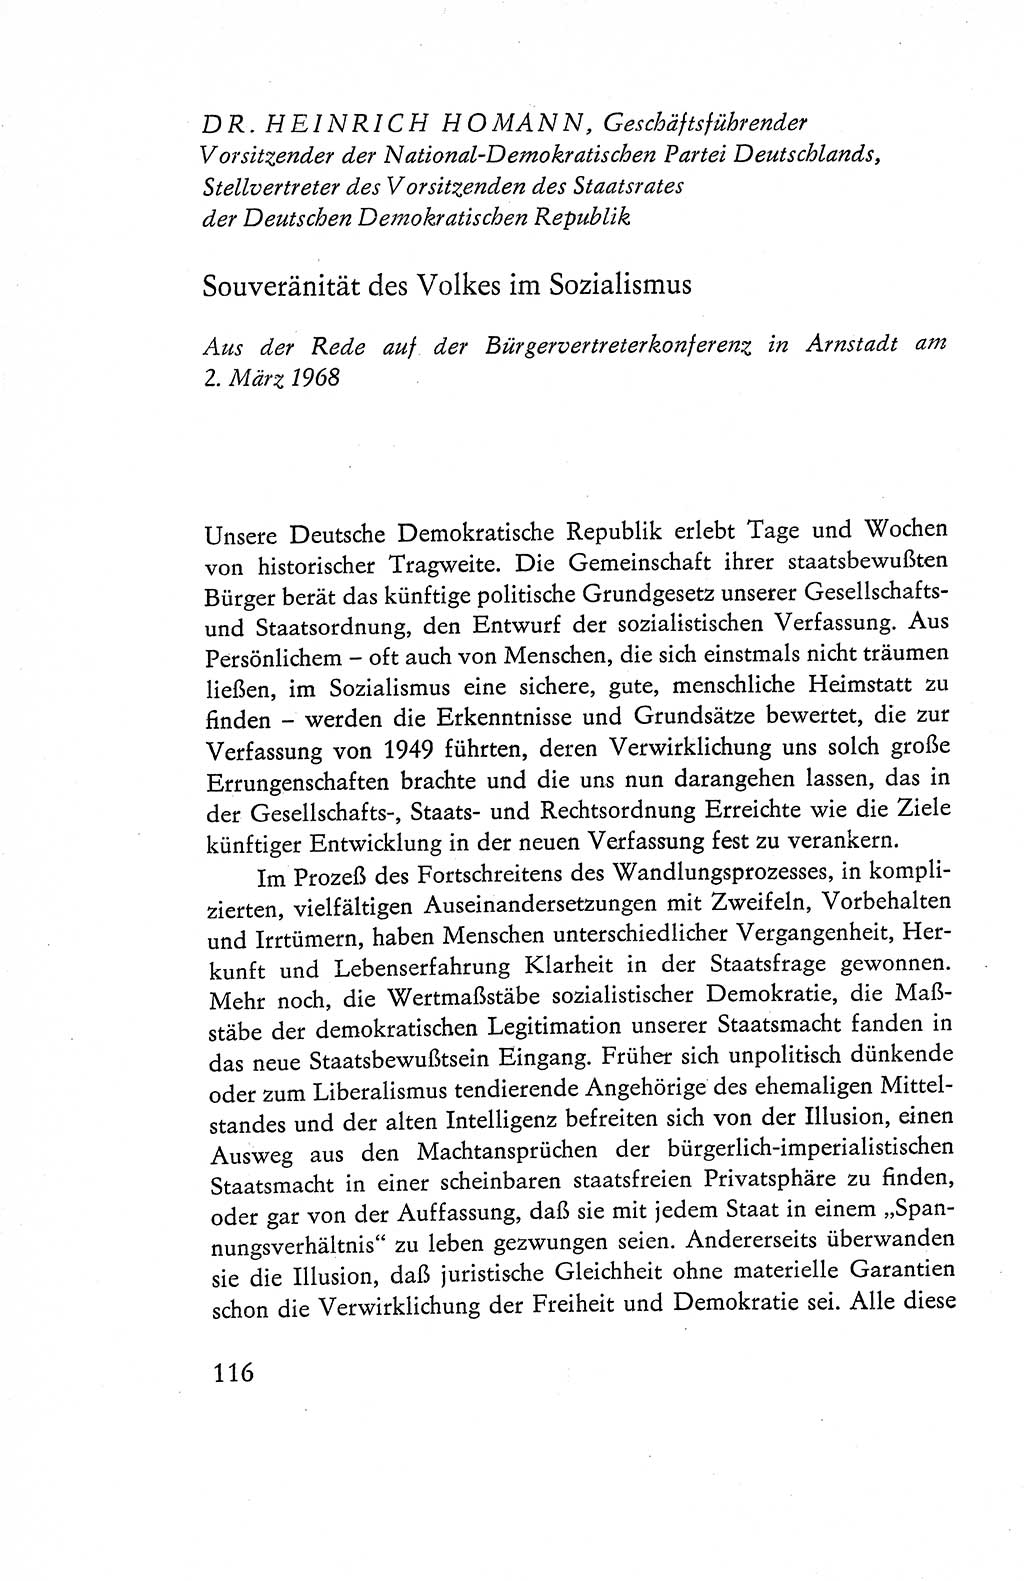 Verfassung der Deutschen Demokratischen Republik (DDR), Dokumente, Kommentar 1969, Band 1, Seite 116 (Verf. DDR Dok. Komm. 1969, Bd. 1, S. 116)